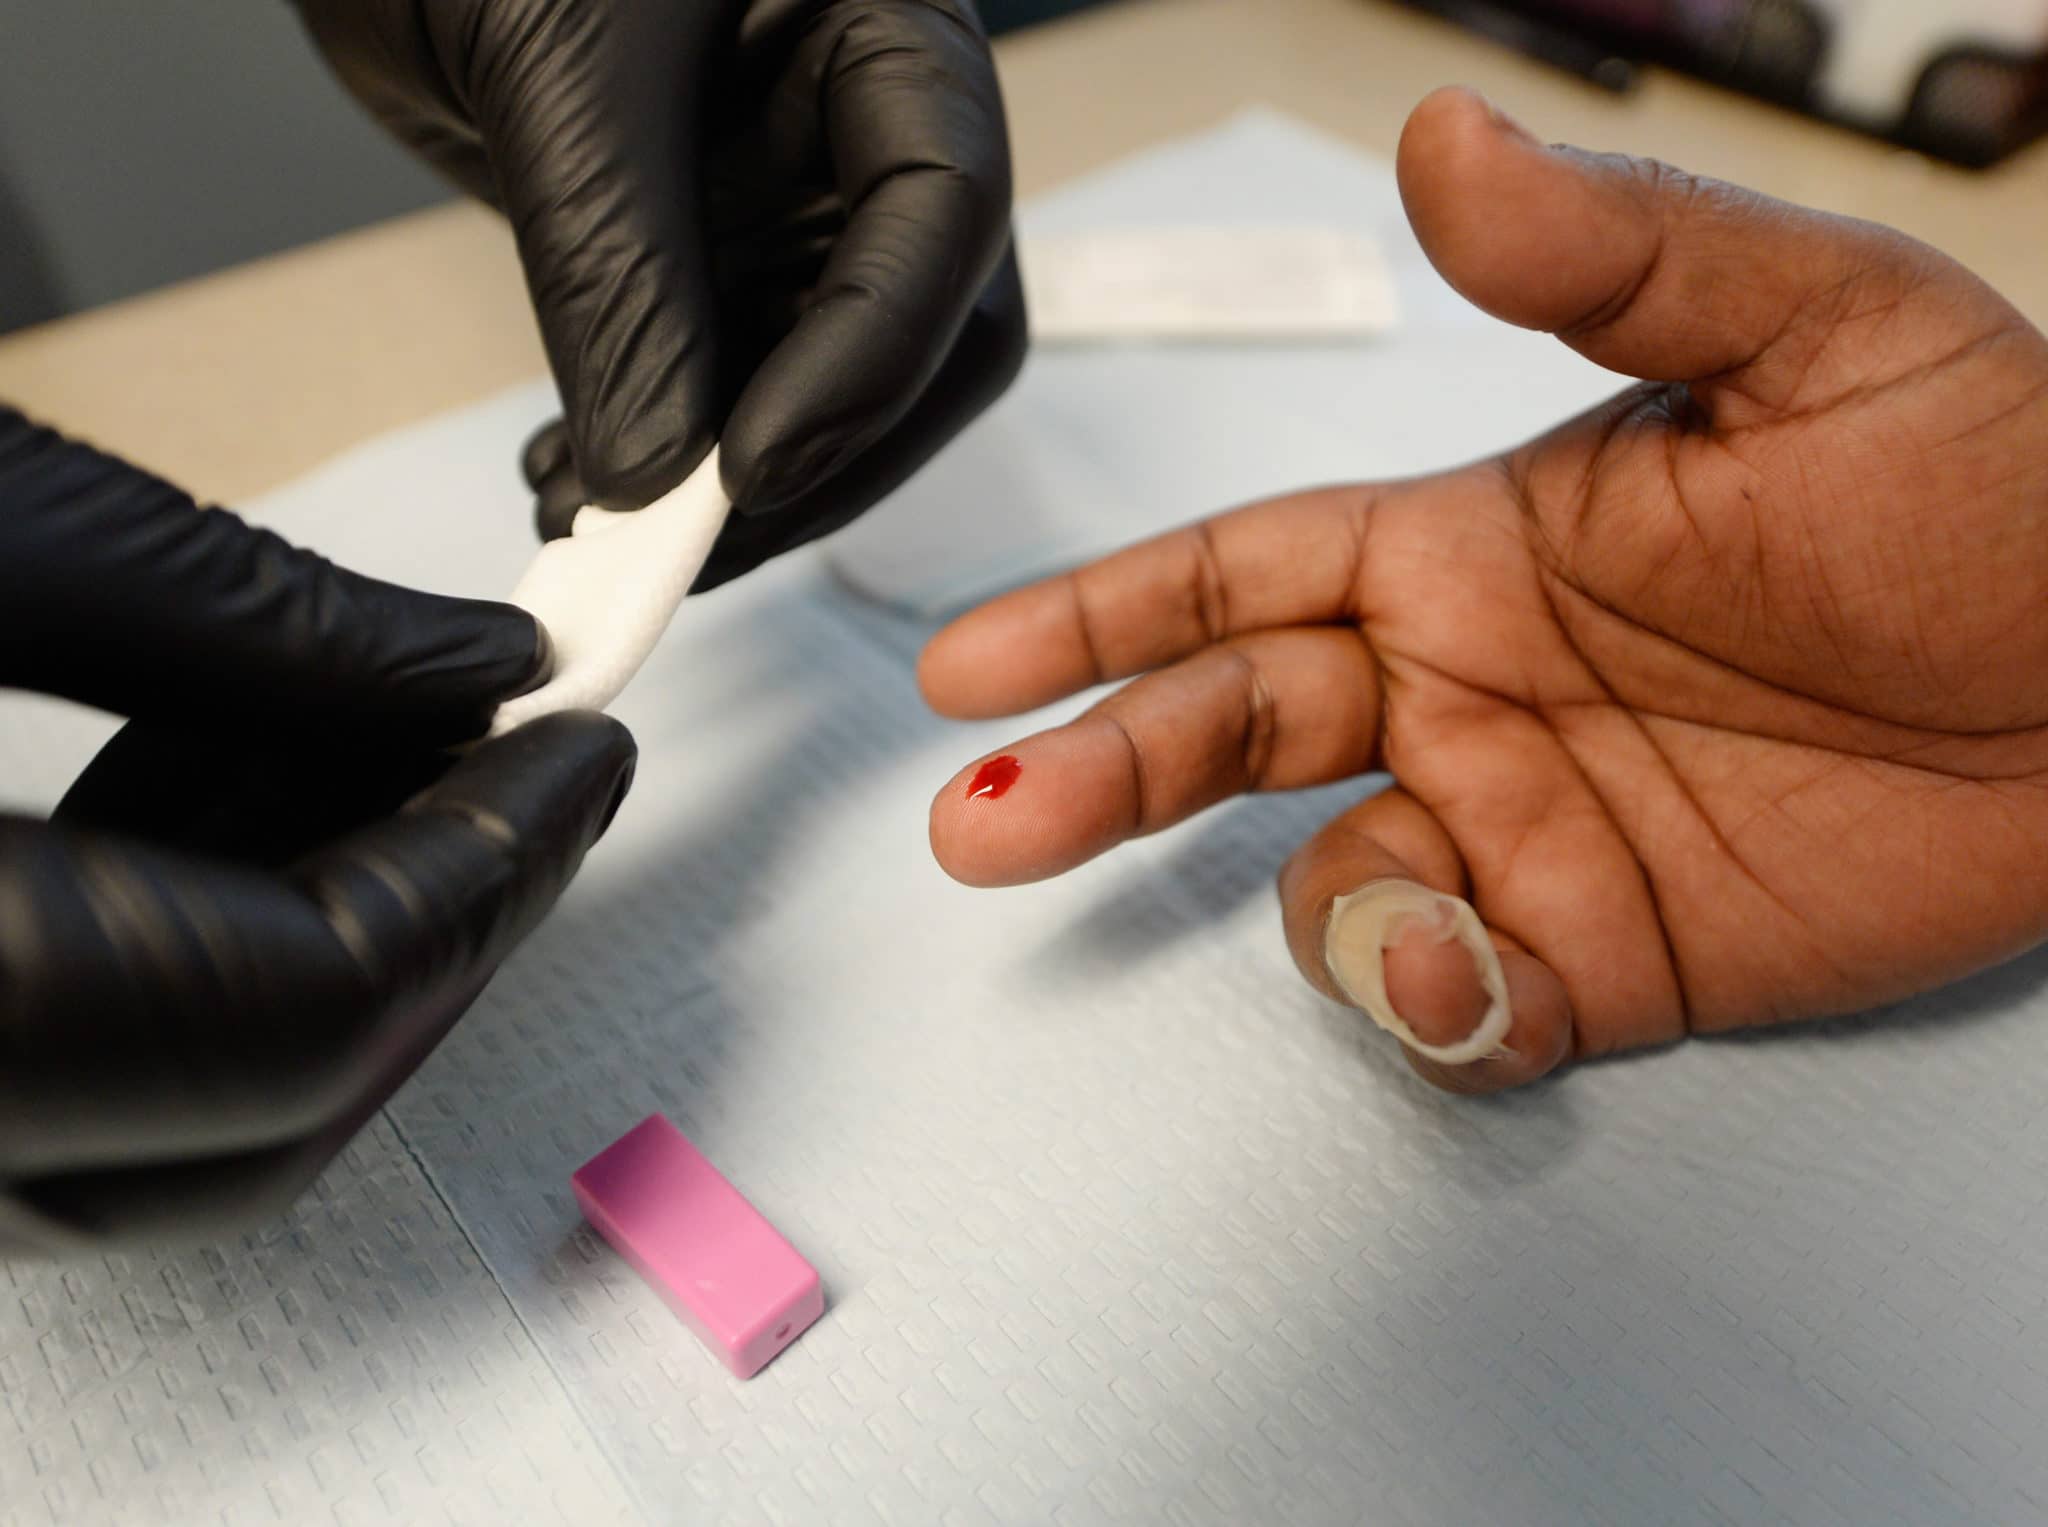 Las personas heterosexuales tienen muchas menos probabilidades de haberse sometido alguna vez a la prueba del VIH, a pesar de constituir casi el 40% de los nuevos casos